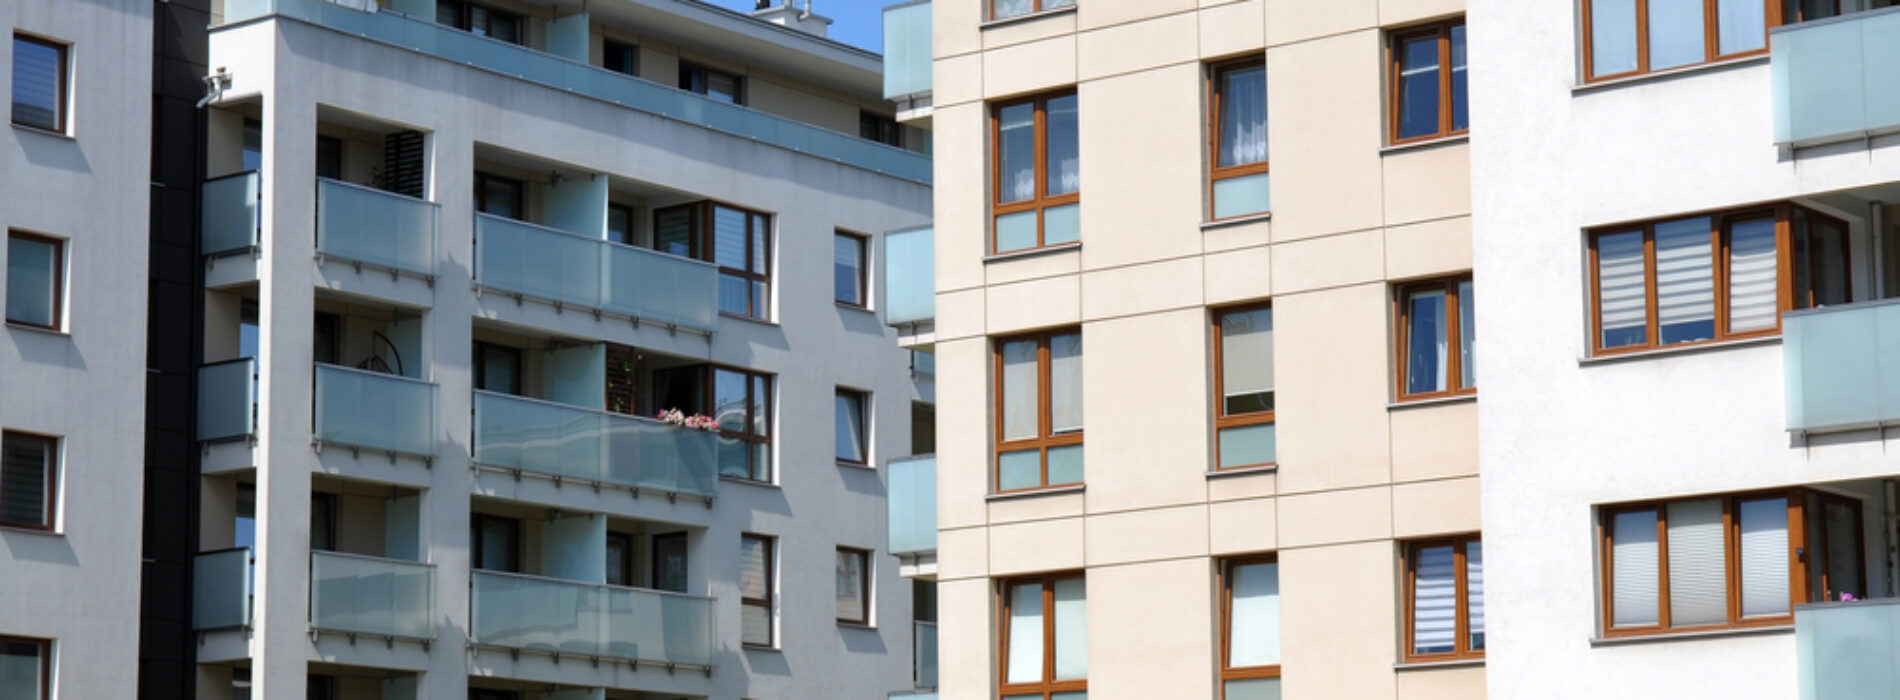 Mieszkanie z potencjałem – wybierz najbardziej rozwojowe osiedla w Łodzi